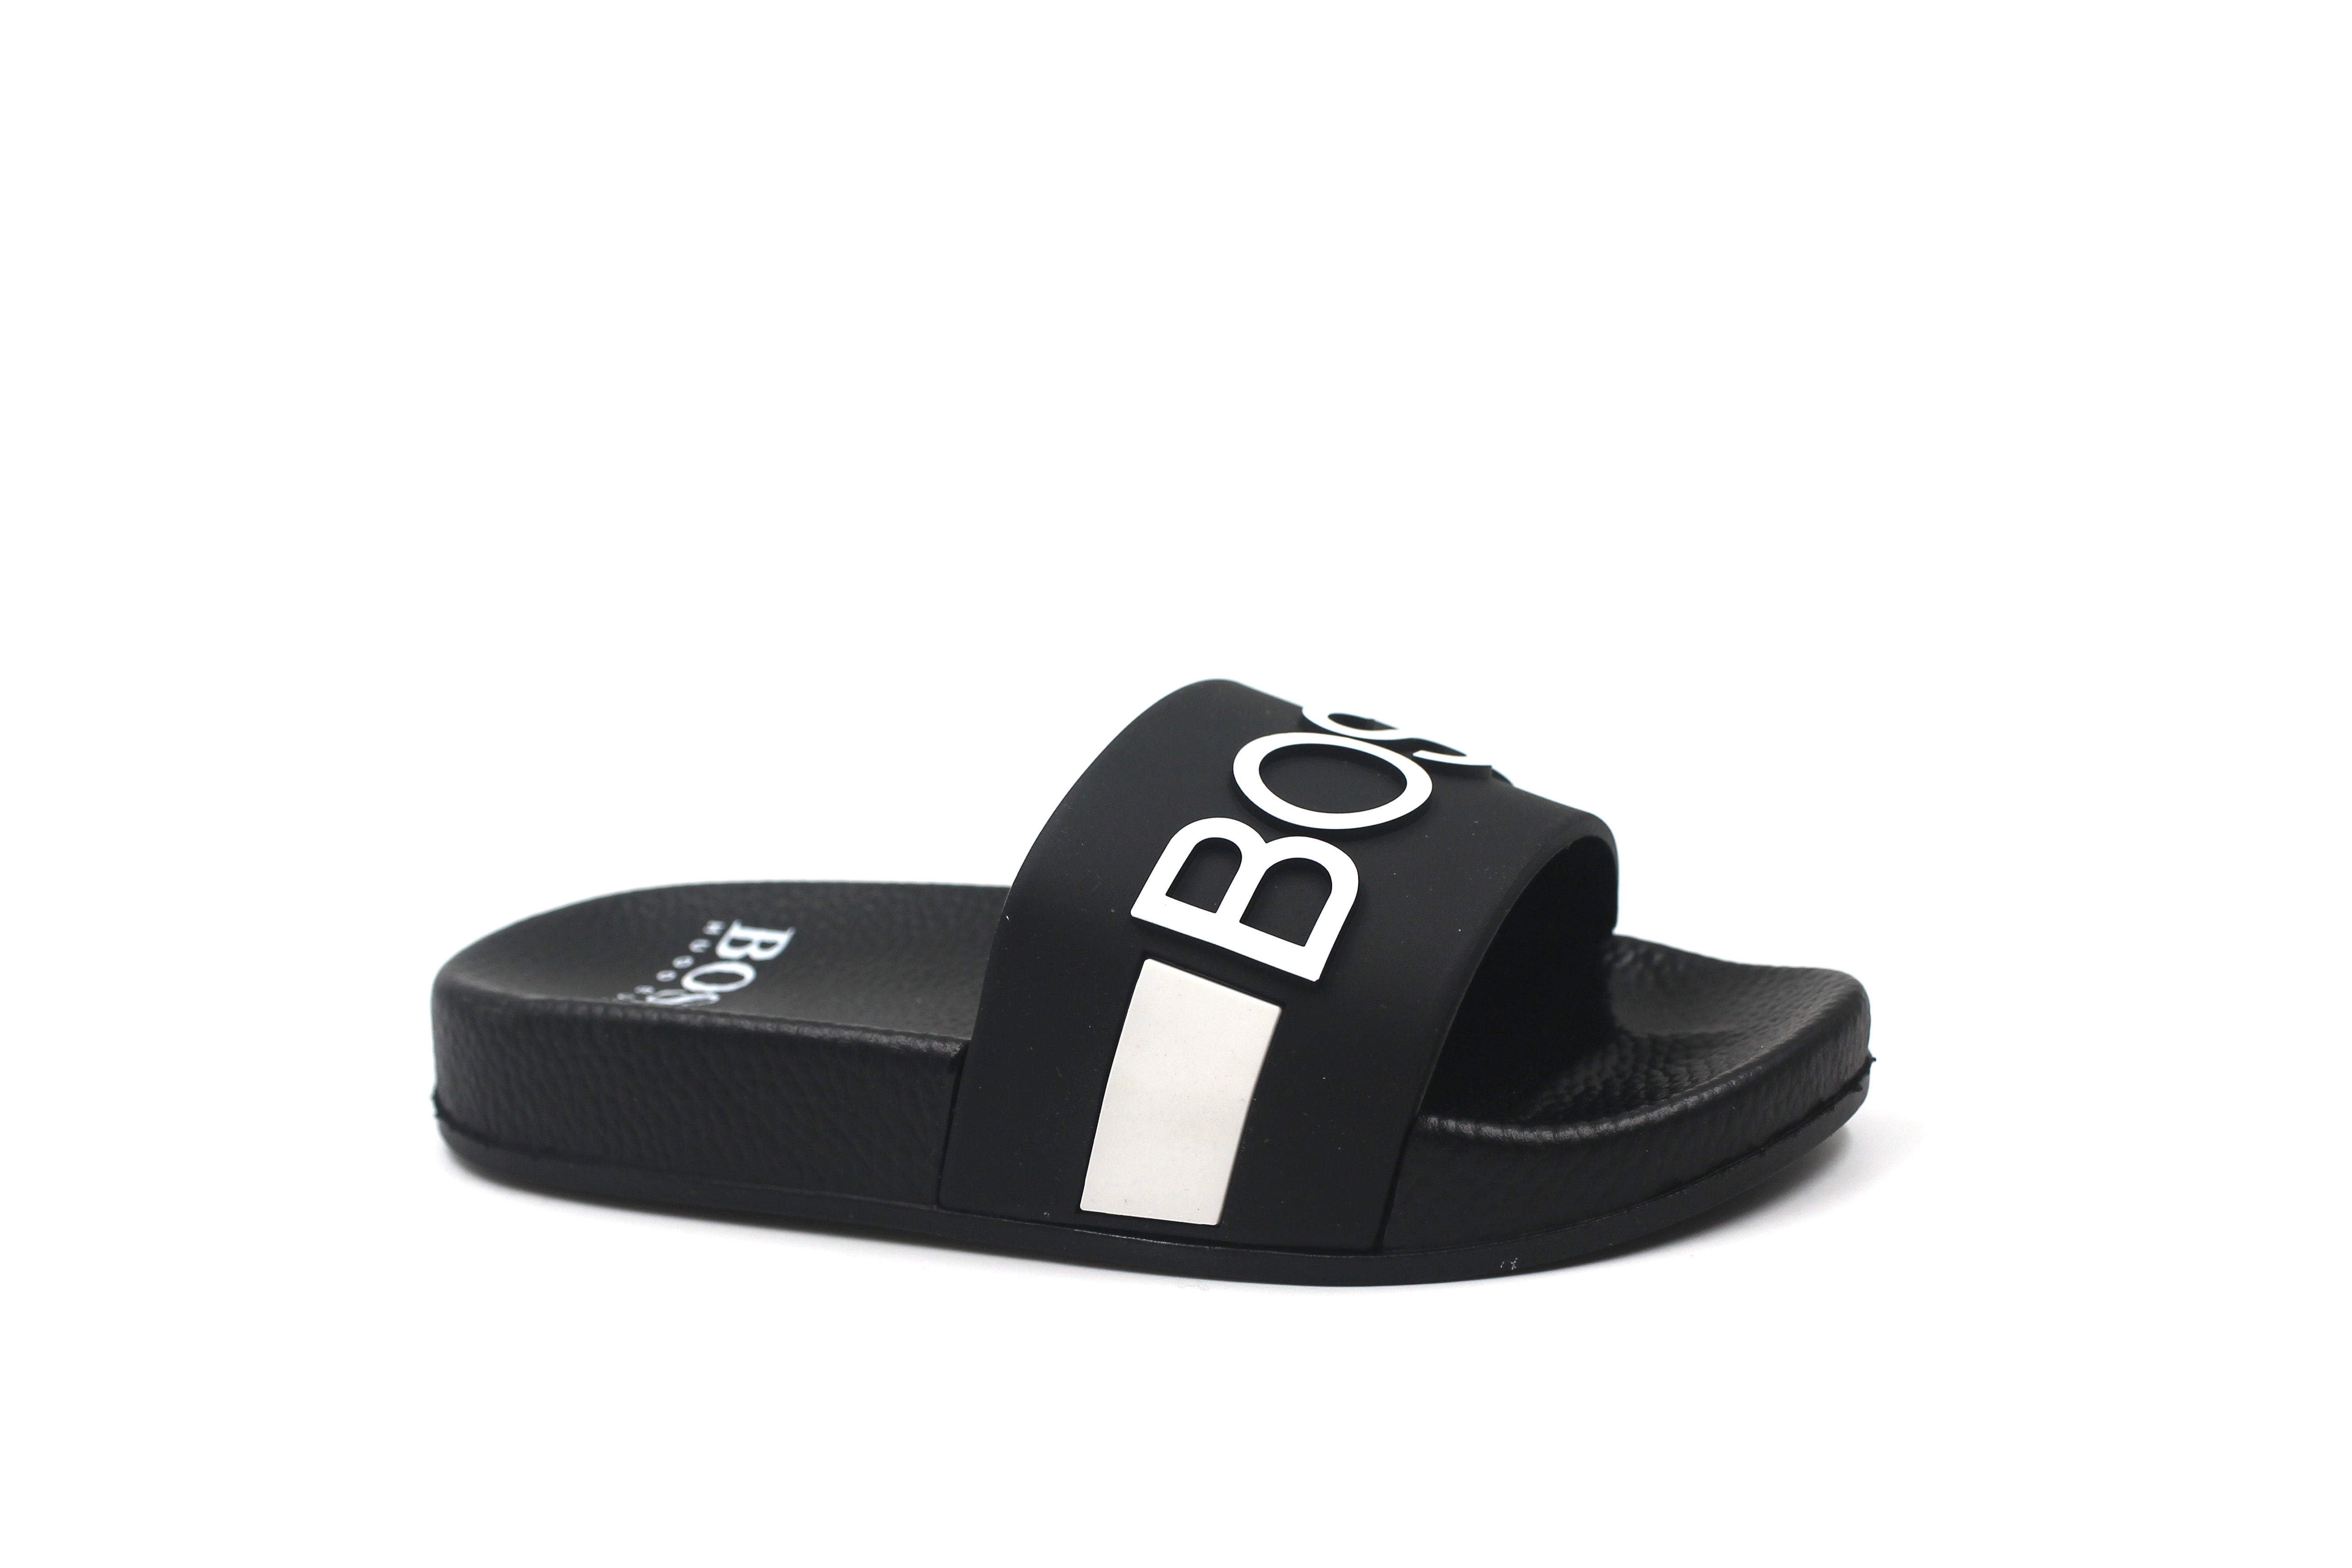 Hugo Boss Black Slides with White Stripe and Logo